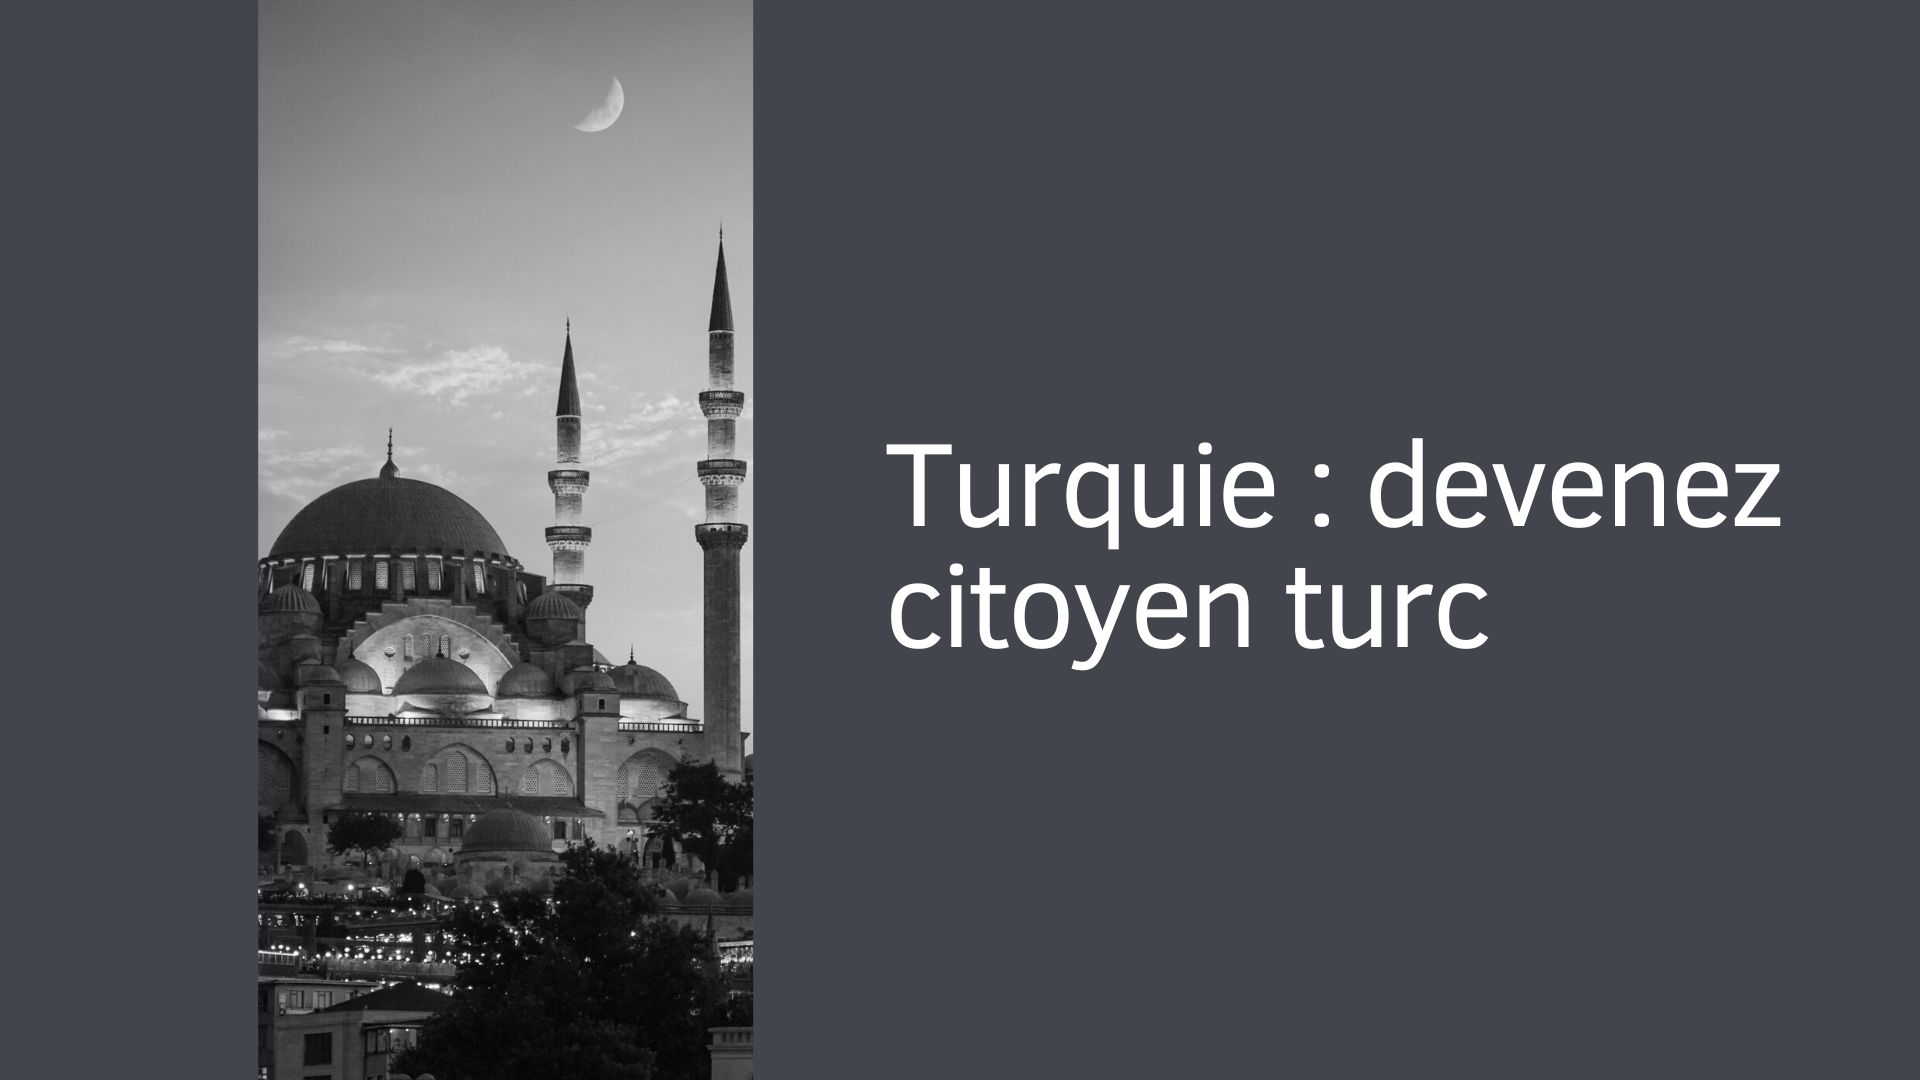 Turquie : devenez citoyen turc